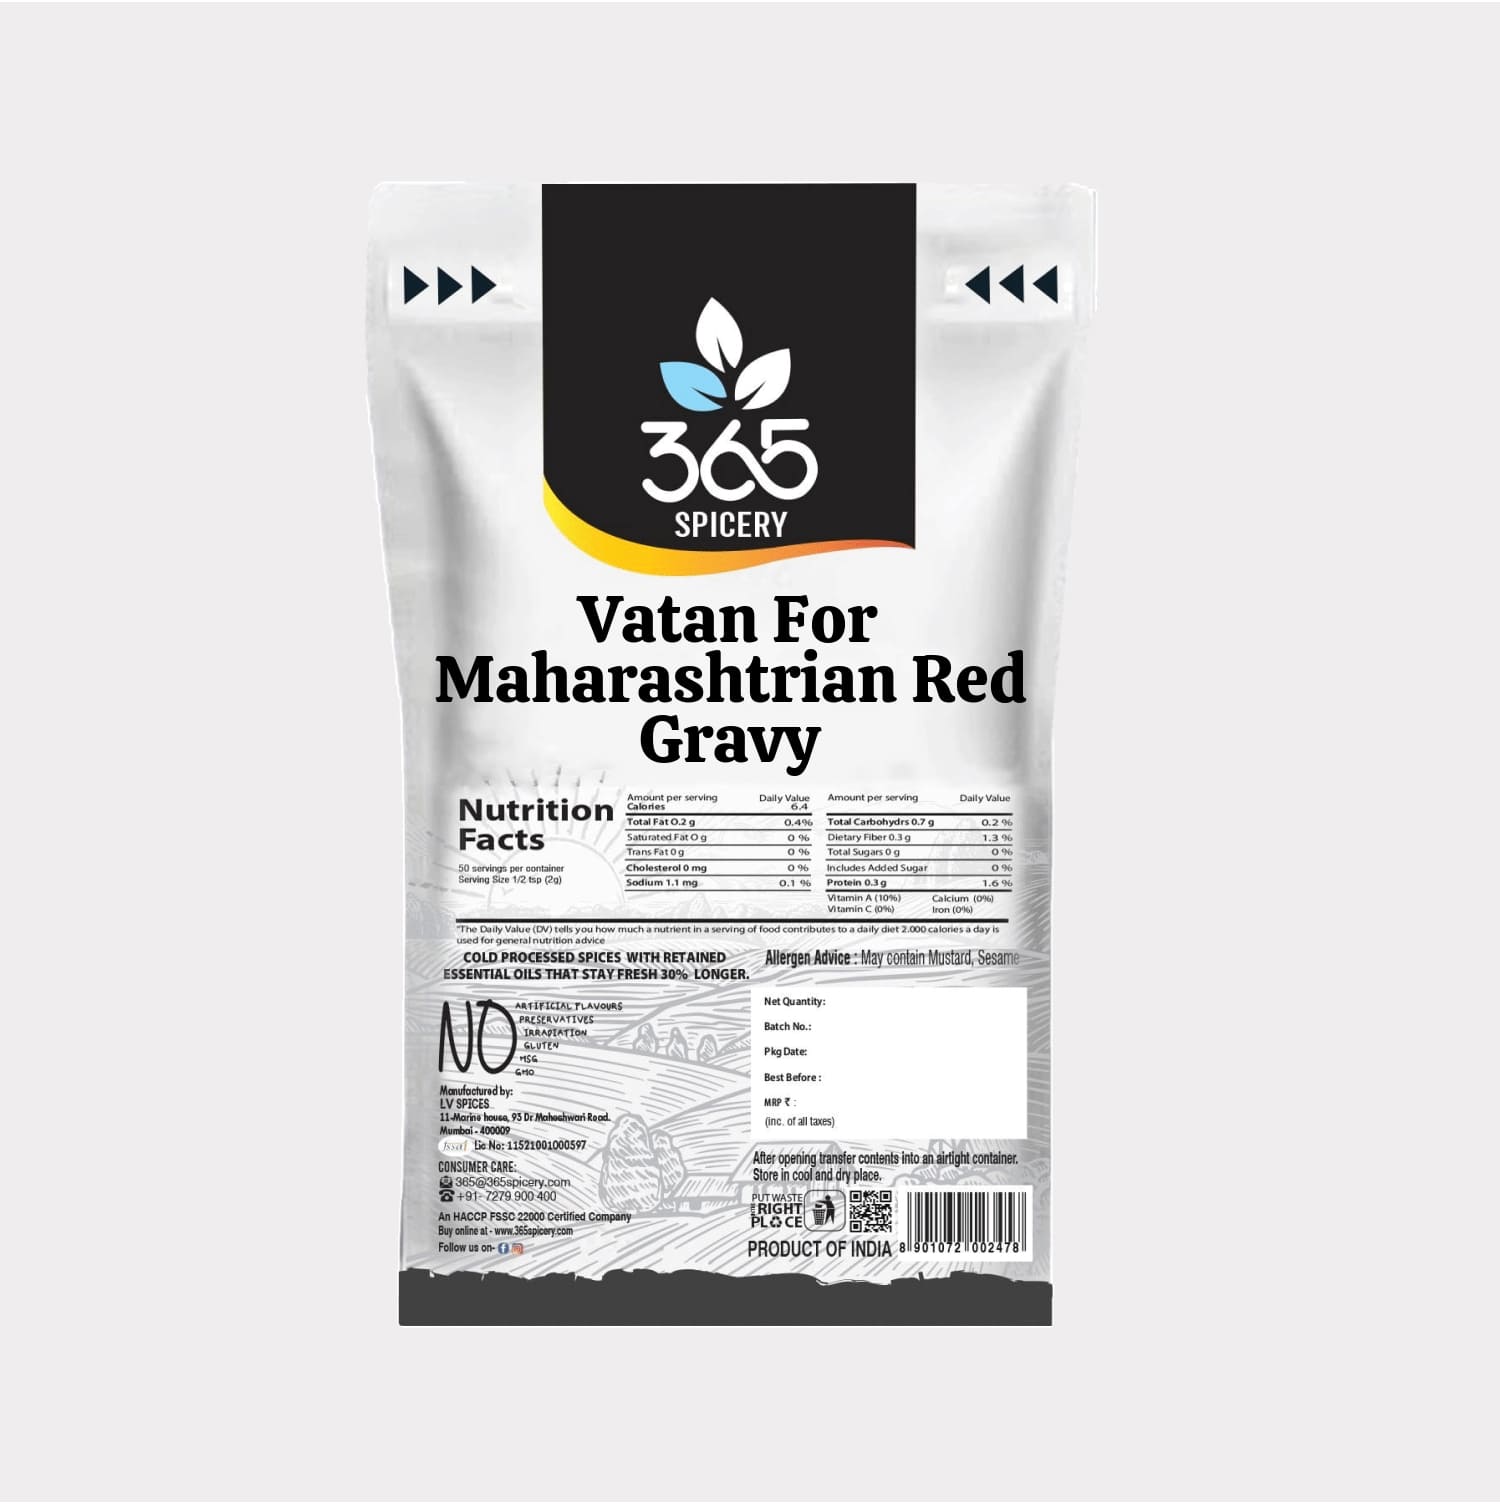 Vatan For Maharashtrian Red Gravy